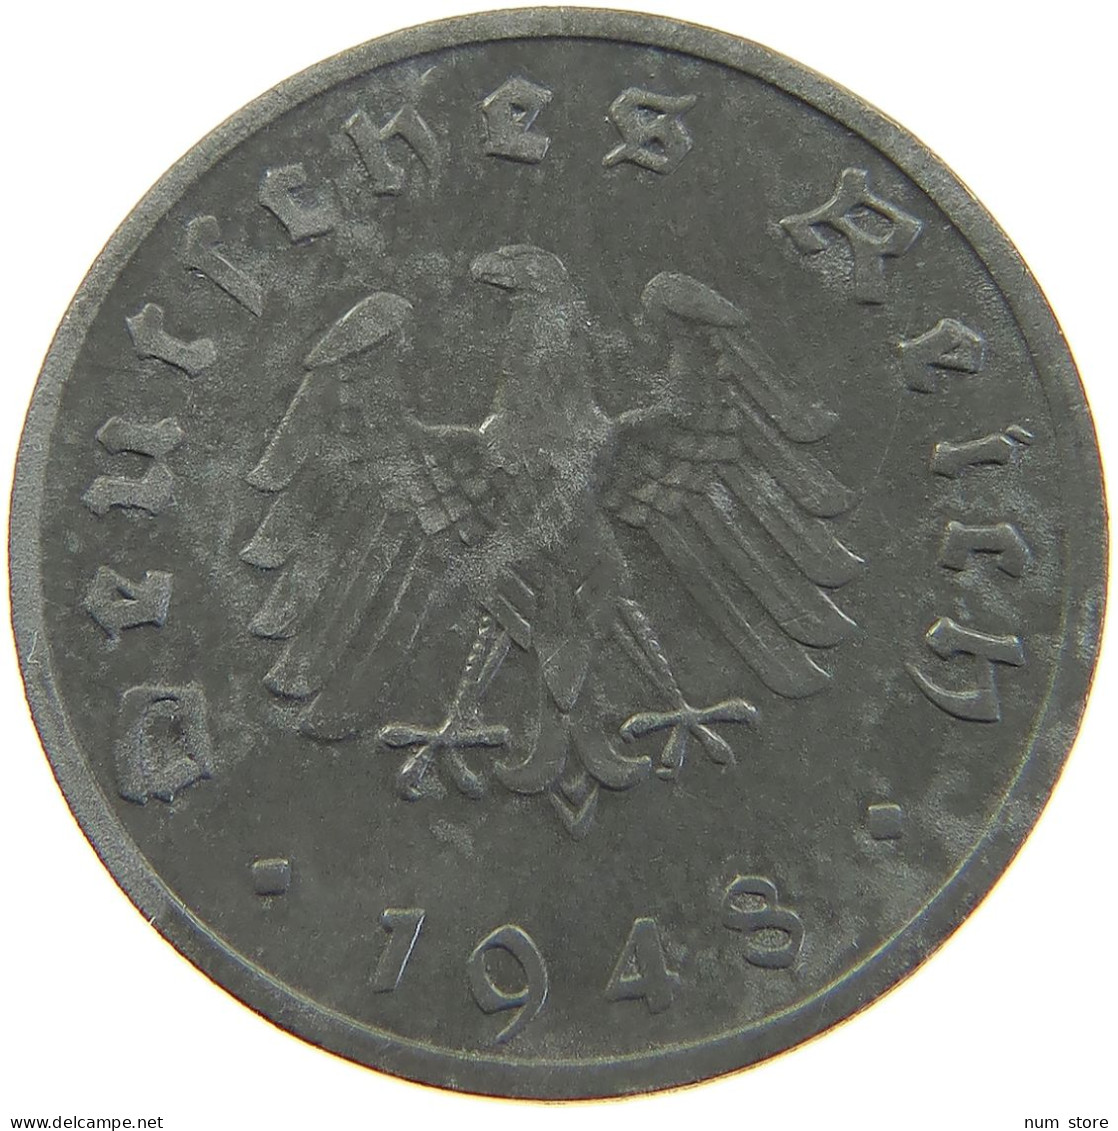 ALLIIERTE BESETZUNG 10 REICHSPFENNIG 1948 F  #MA 102755 - 10 Reichspfennig